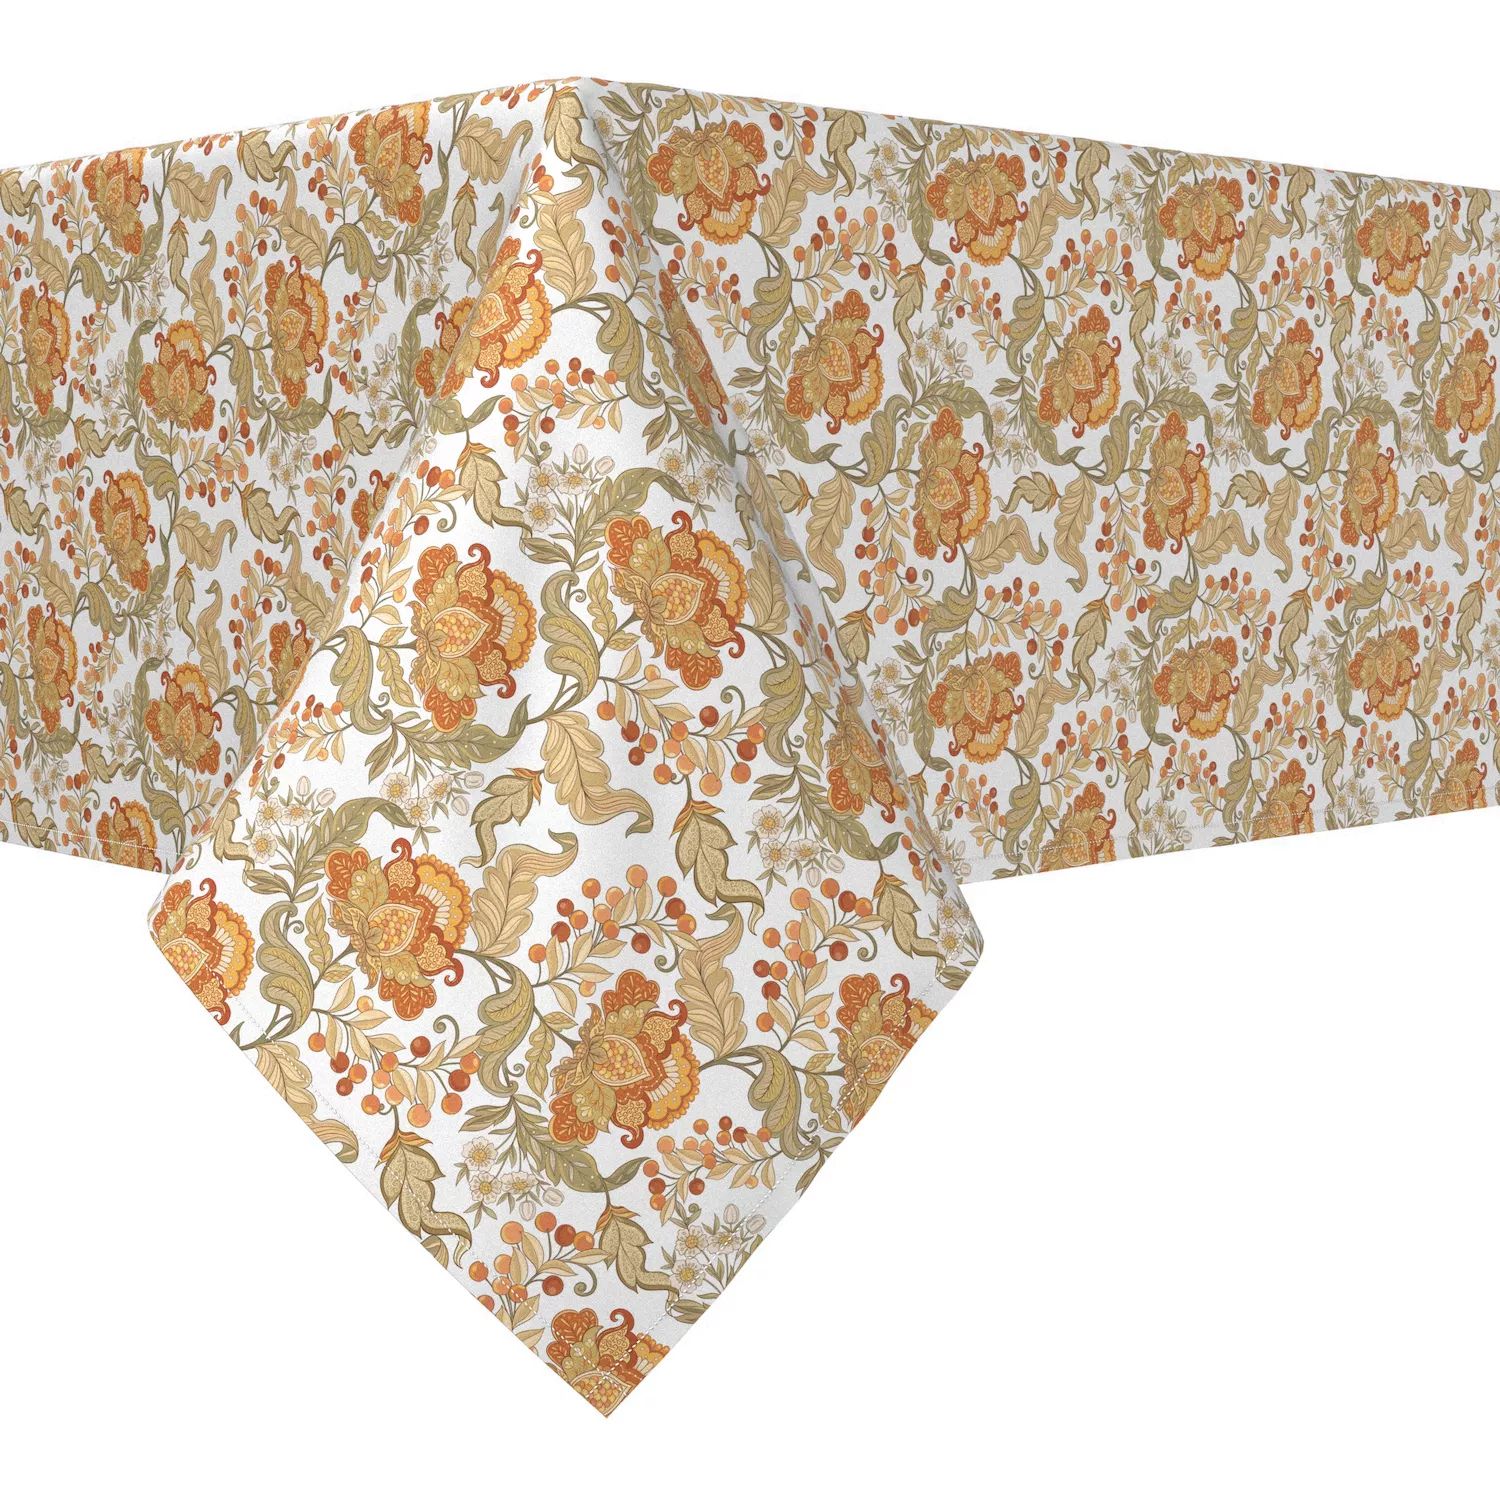 Прямоугольная скатерть, 100 % полиэстер, 60x84 дюйма, с цветочным принтом в винтажном стиле. скатерть кружевная в винтажном стиле хлопковая скатерть в клетку прямоугольная для кухни столовой